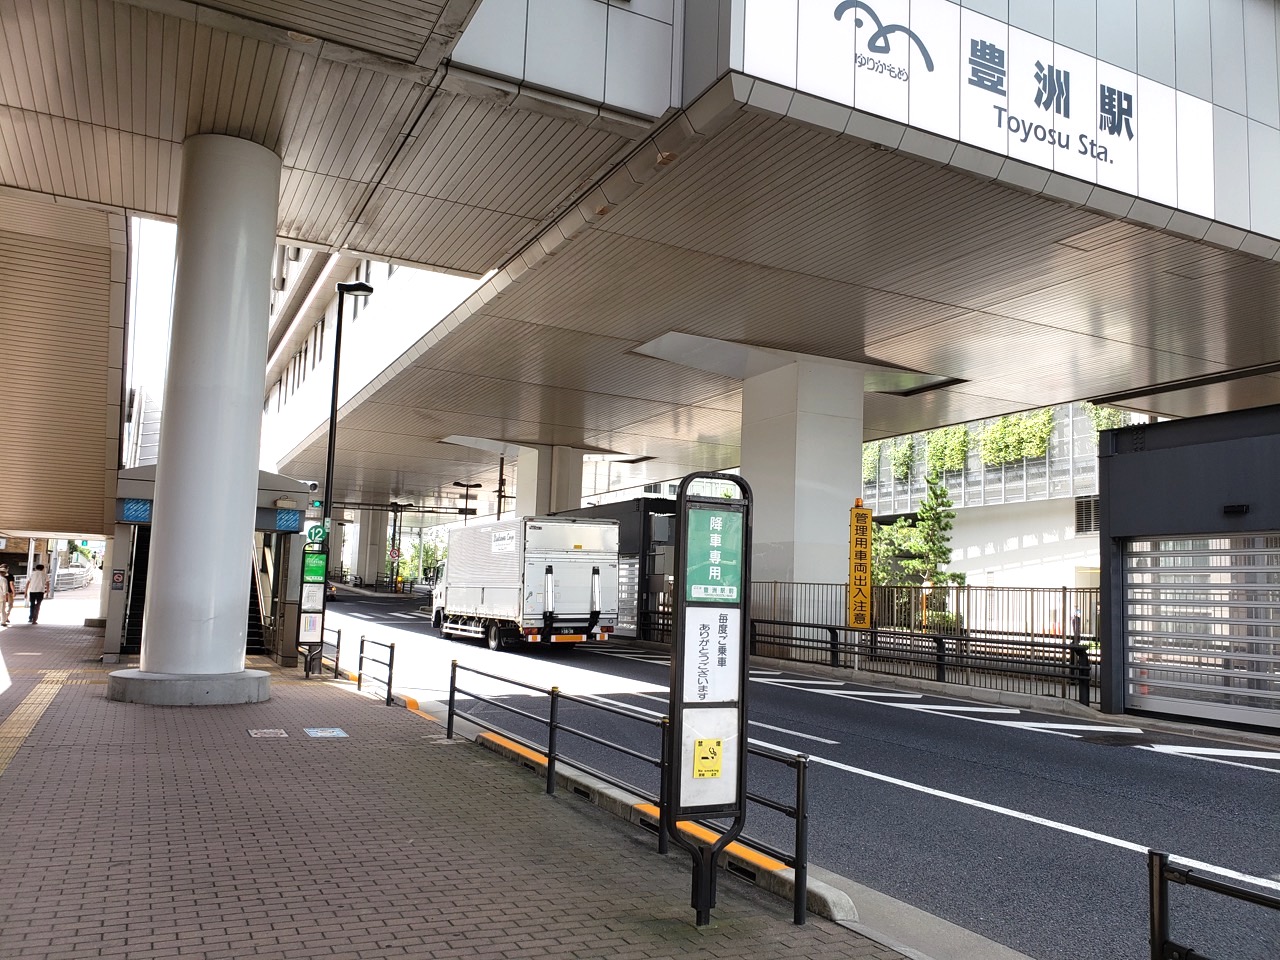 新橋駅からバスで豊洲市場や新豊洲駅へアクセス 12 3に運行ダイヤ改正 とよすと